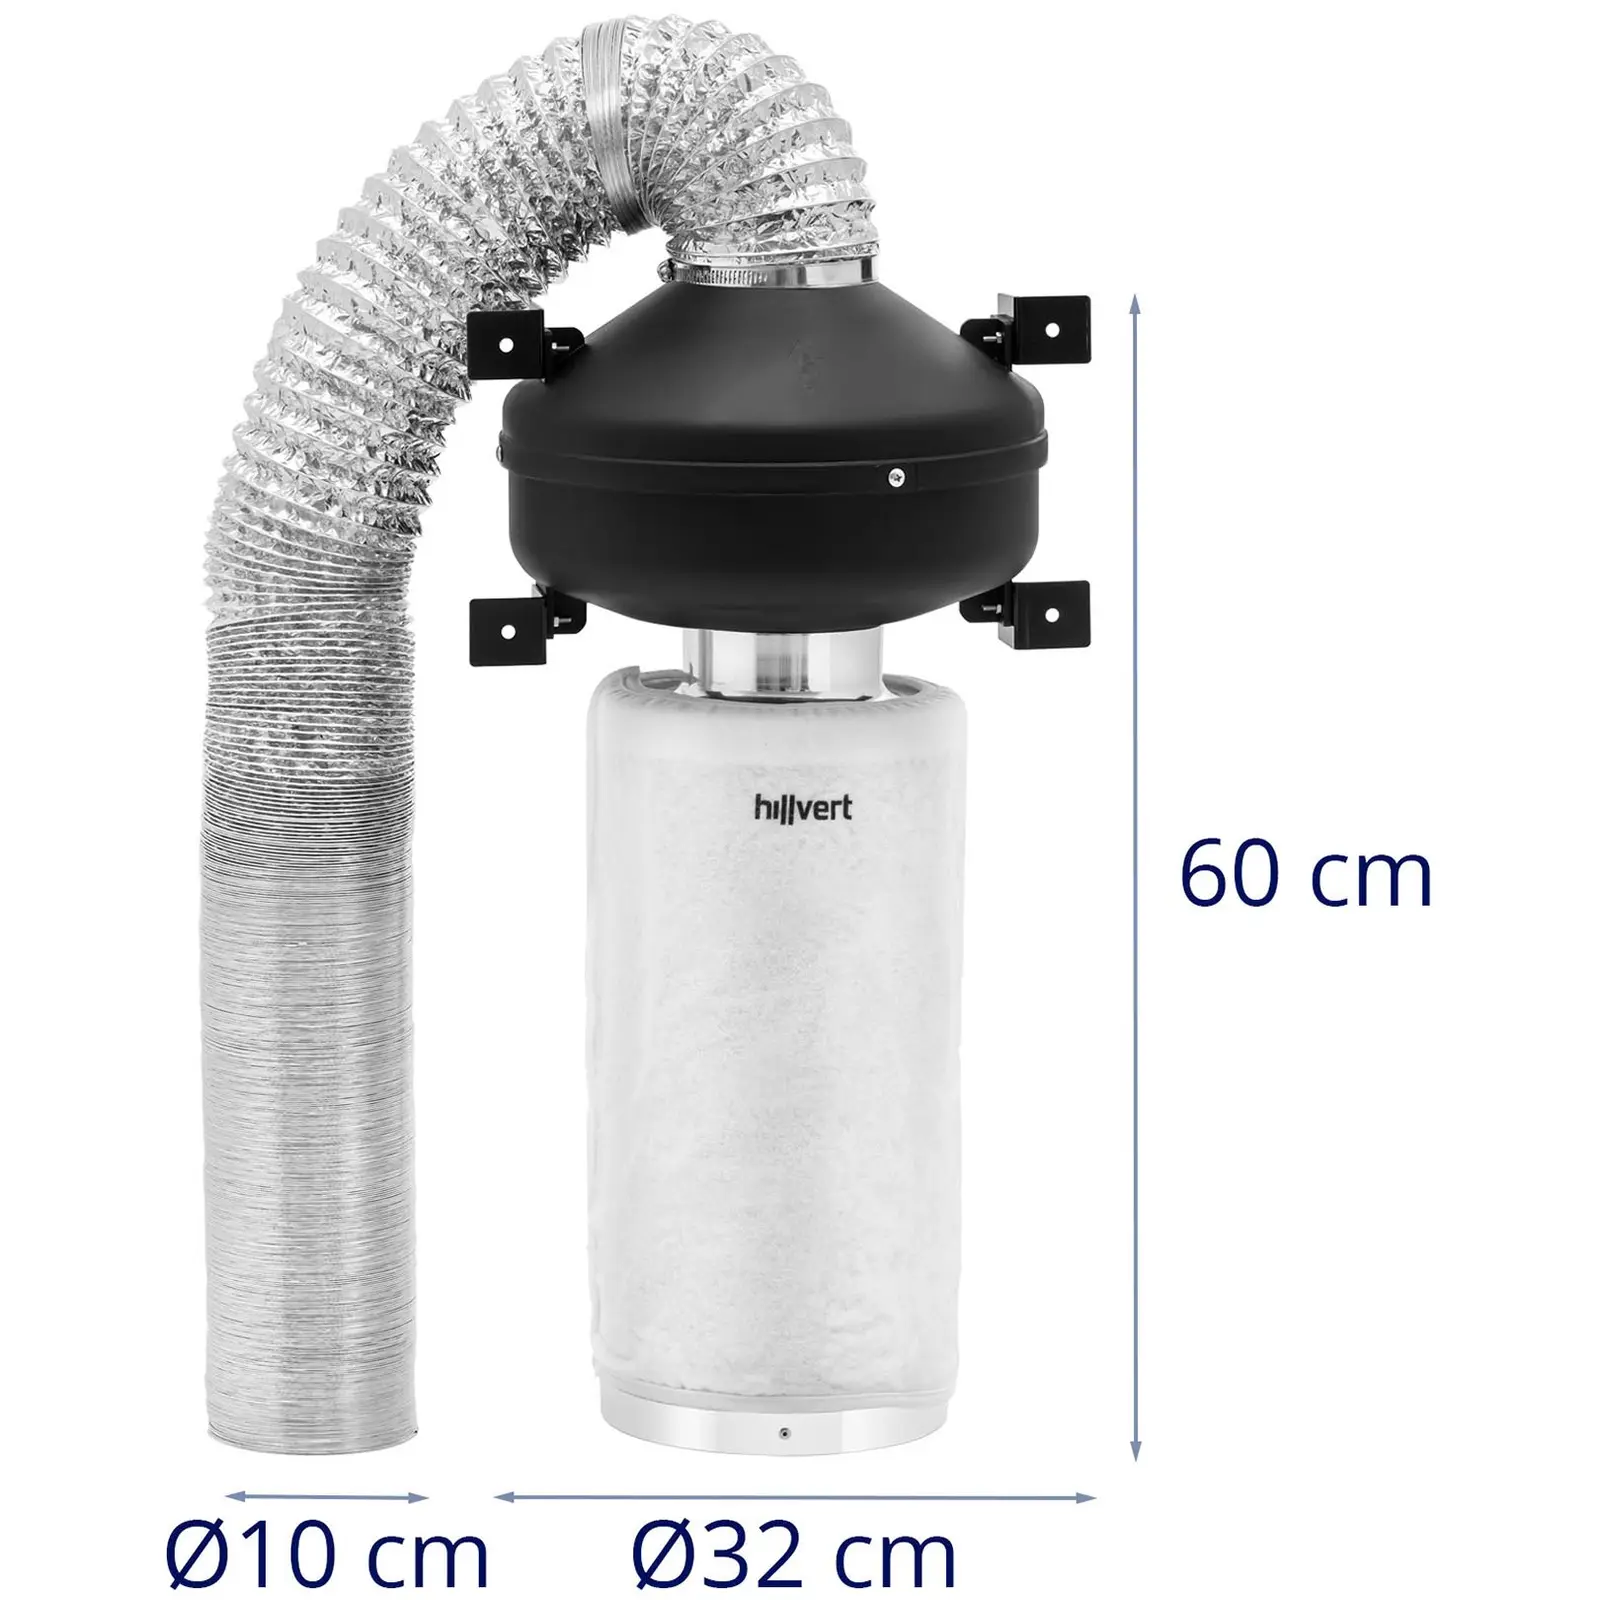 Zestaw wentylacyjny - filtr z węglem aktywnym 40 cm / wentylator kanałowy / rura wentylacyjna - 249,6 m³/h - wylot Ø102 mm